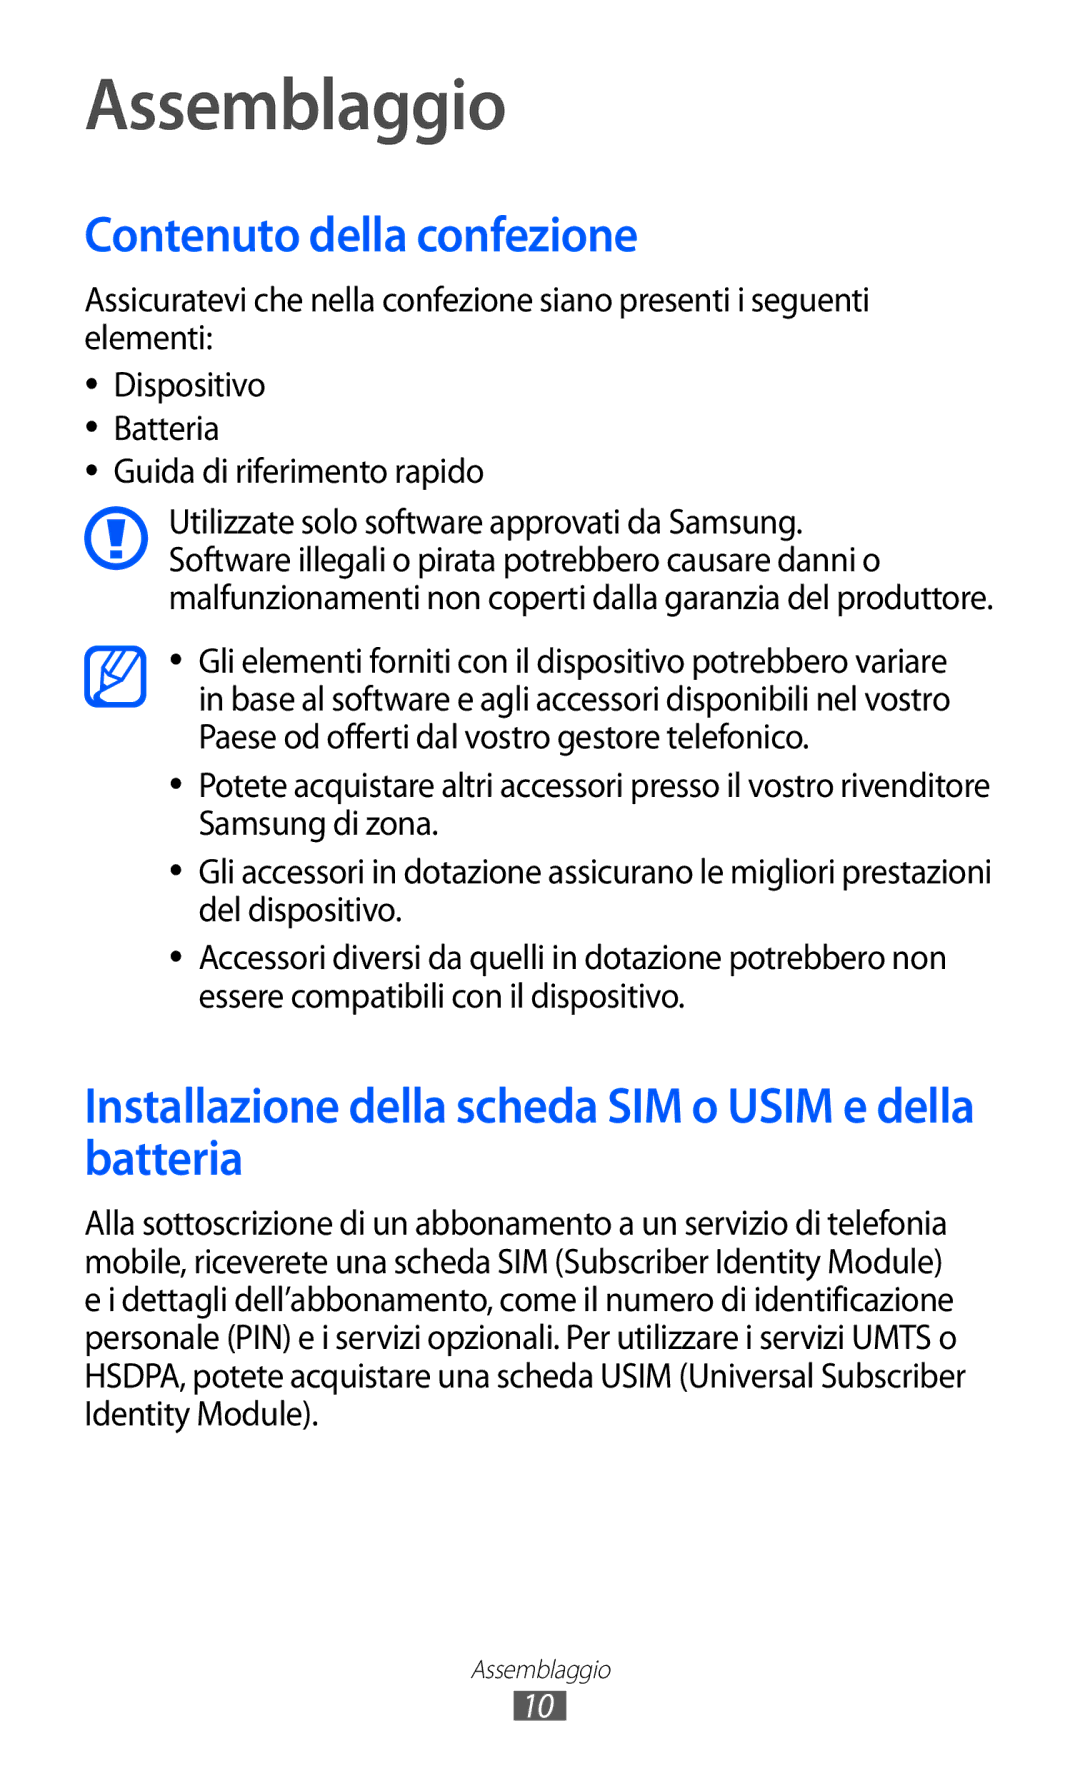 Samsung GT-I8150EWAITV Assemblaggio, Contenuto della confezione, Installazione della scheda SIM o Usim e della batteria 